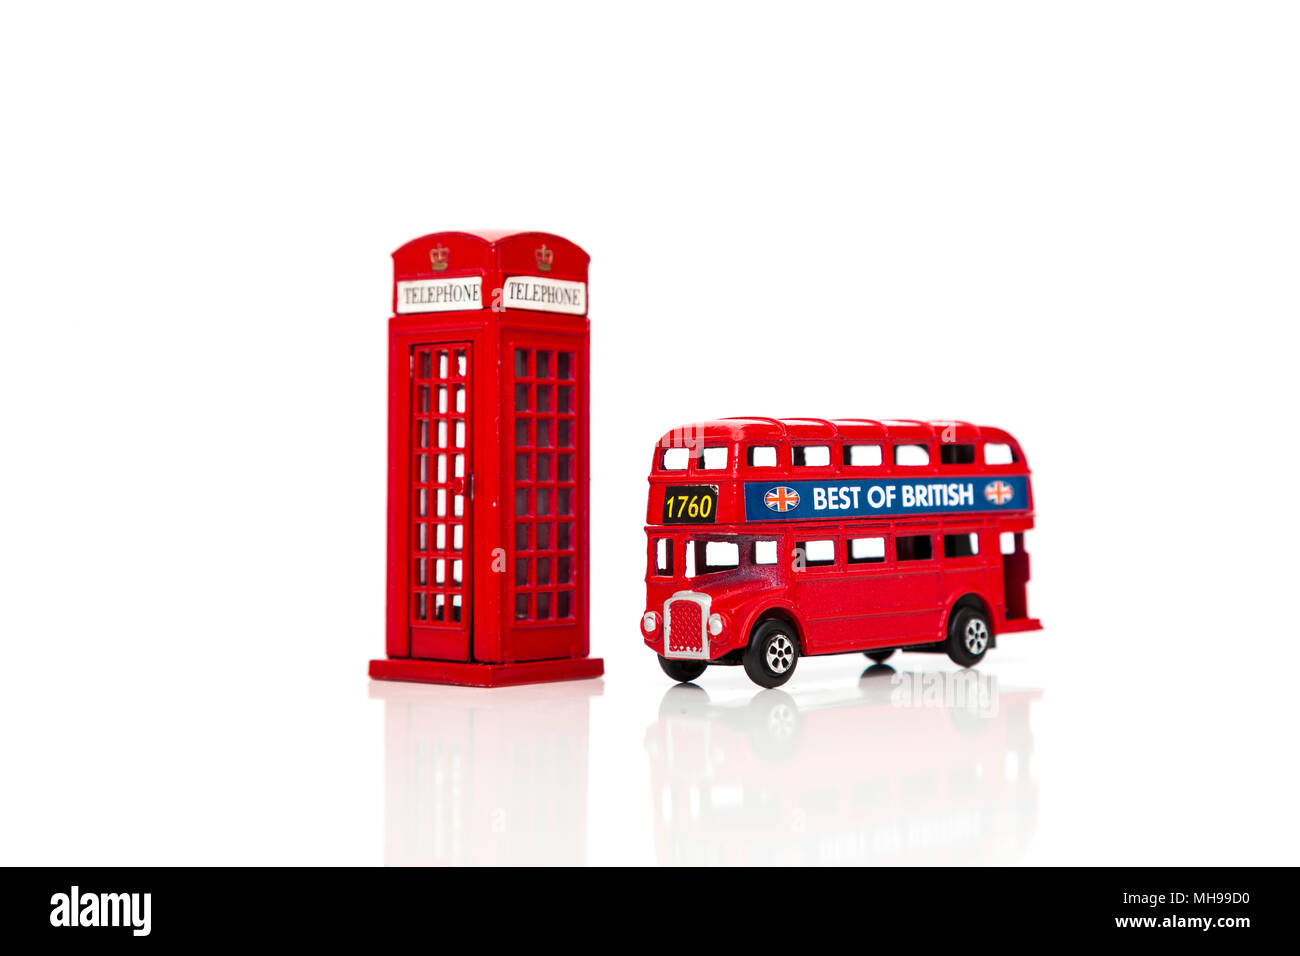 Un Rosso Londra Doubledecker Bus e rosso nella casella Telefono. Isolato su sfondo bianco Foto Stock